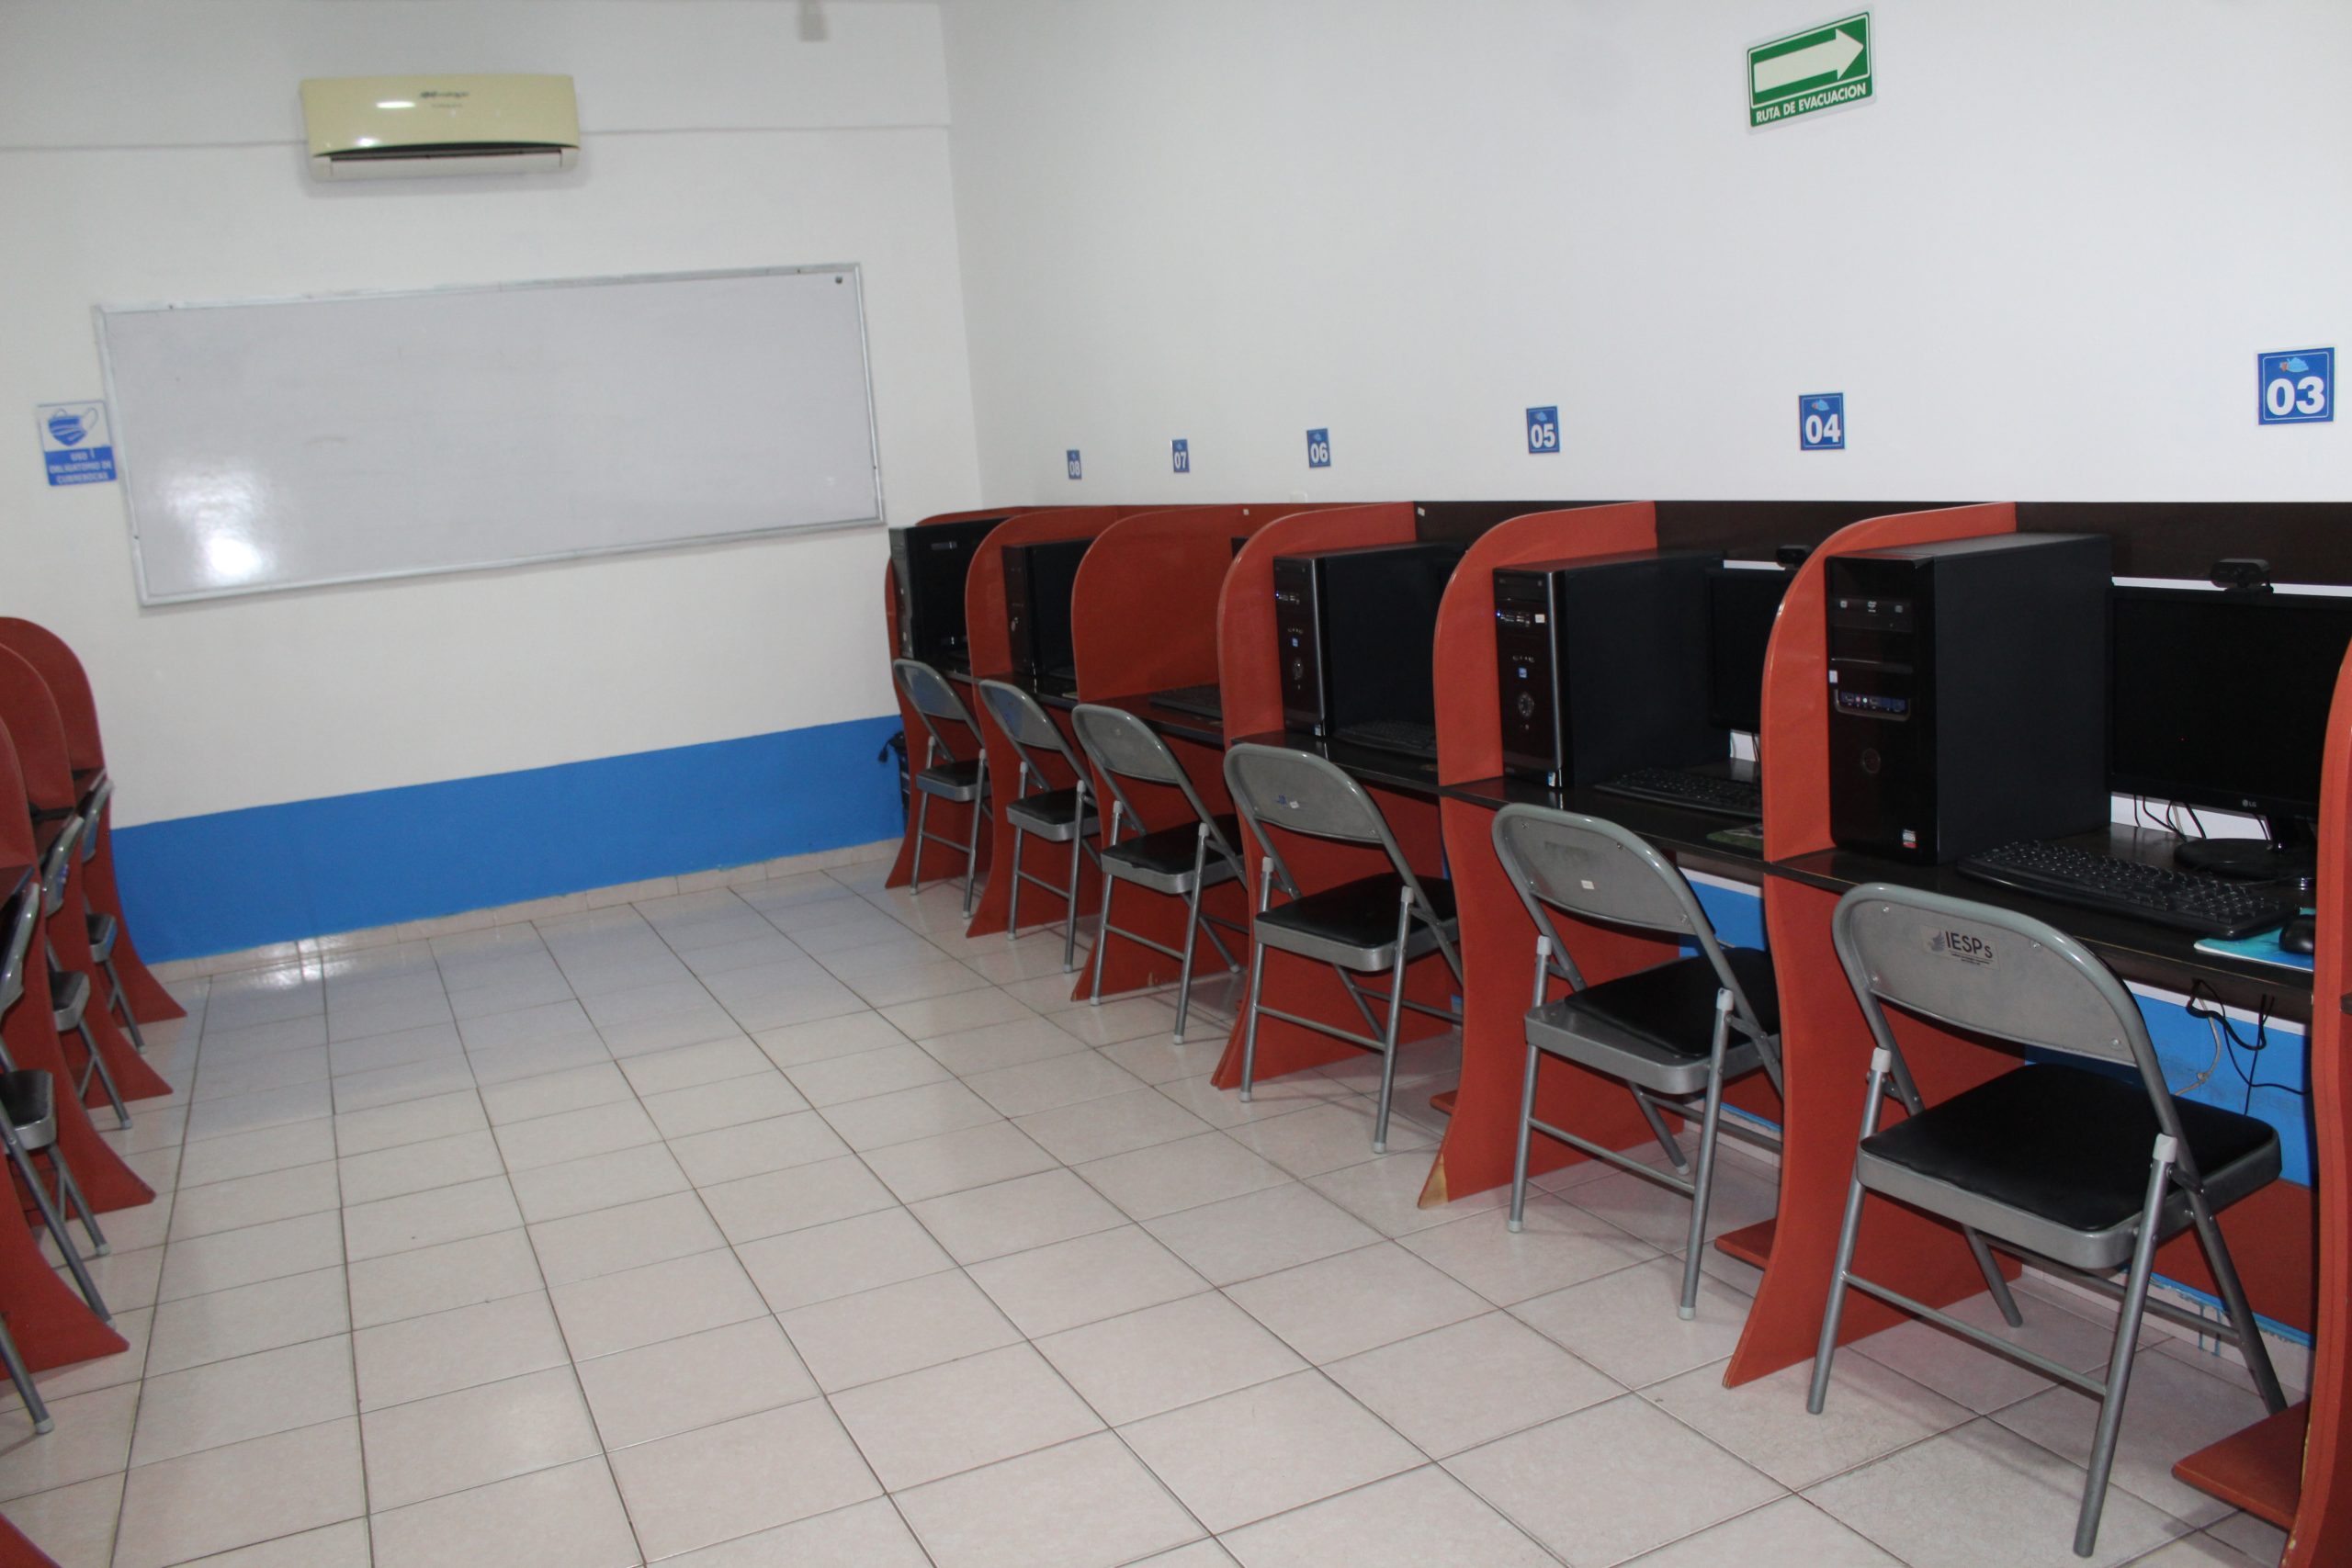 El laboratorio de computación esta diseñado para prestar servicios de cómputo a la comunidad del Grupo Educativo Pacífico Sur.